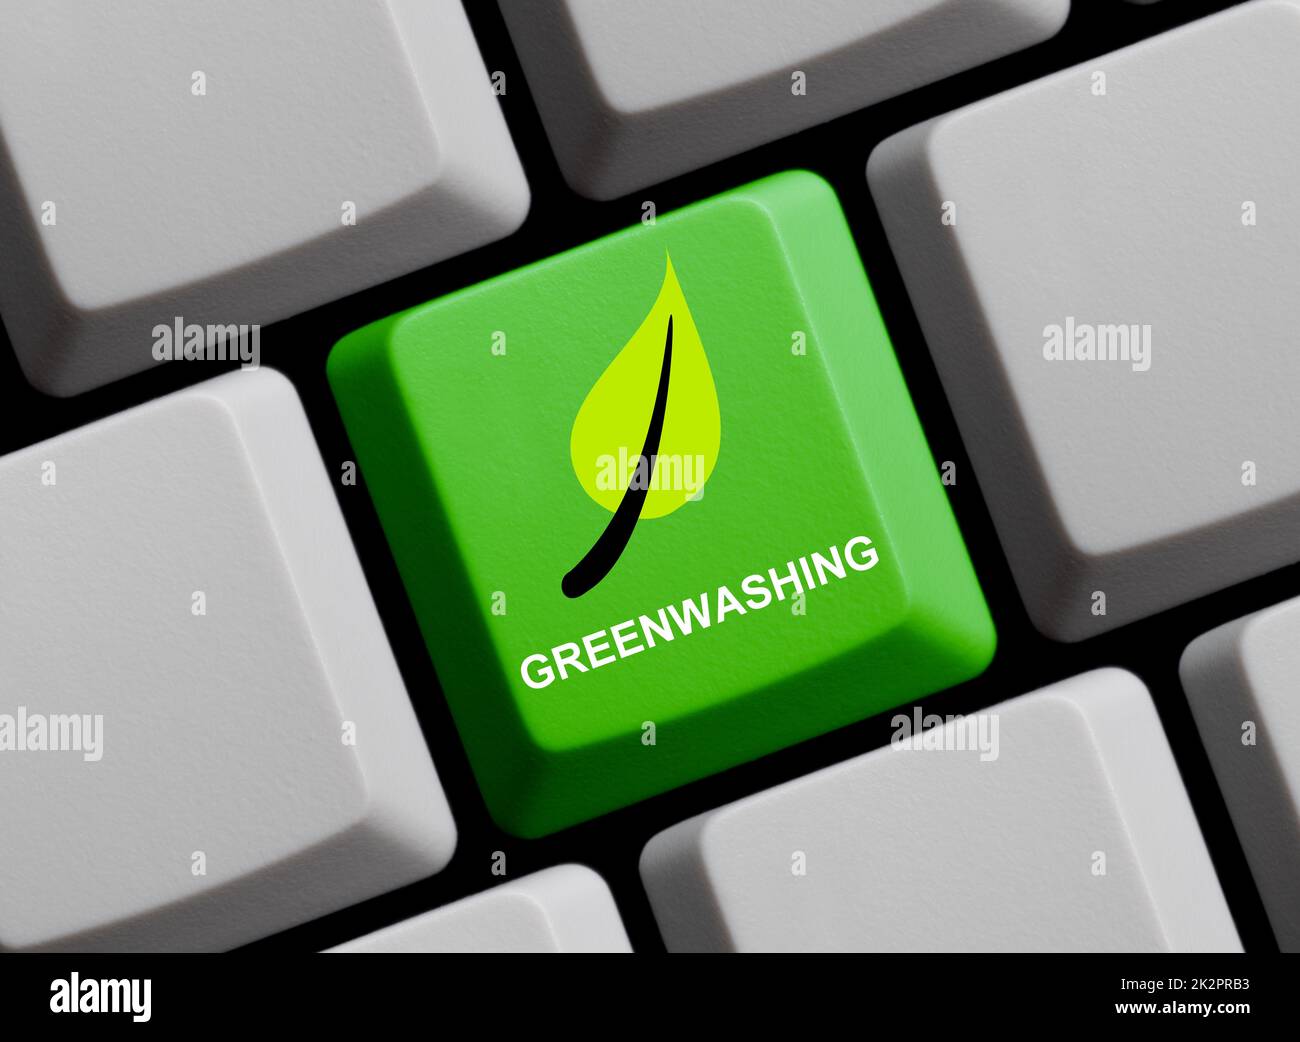 Leaf auf Tastatur - Greenwashing online - 3D Abbildung Stockfoto